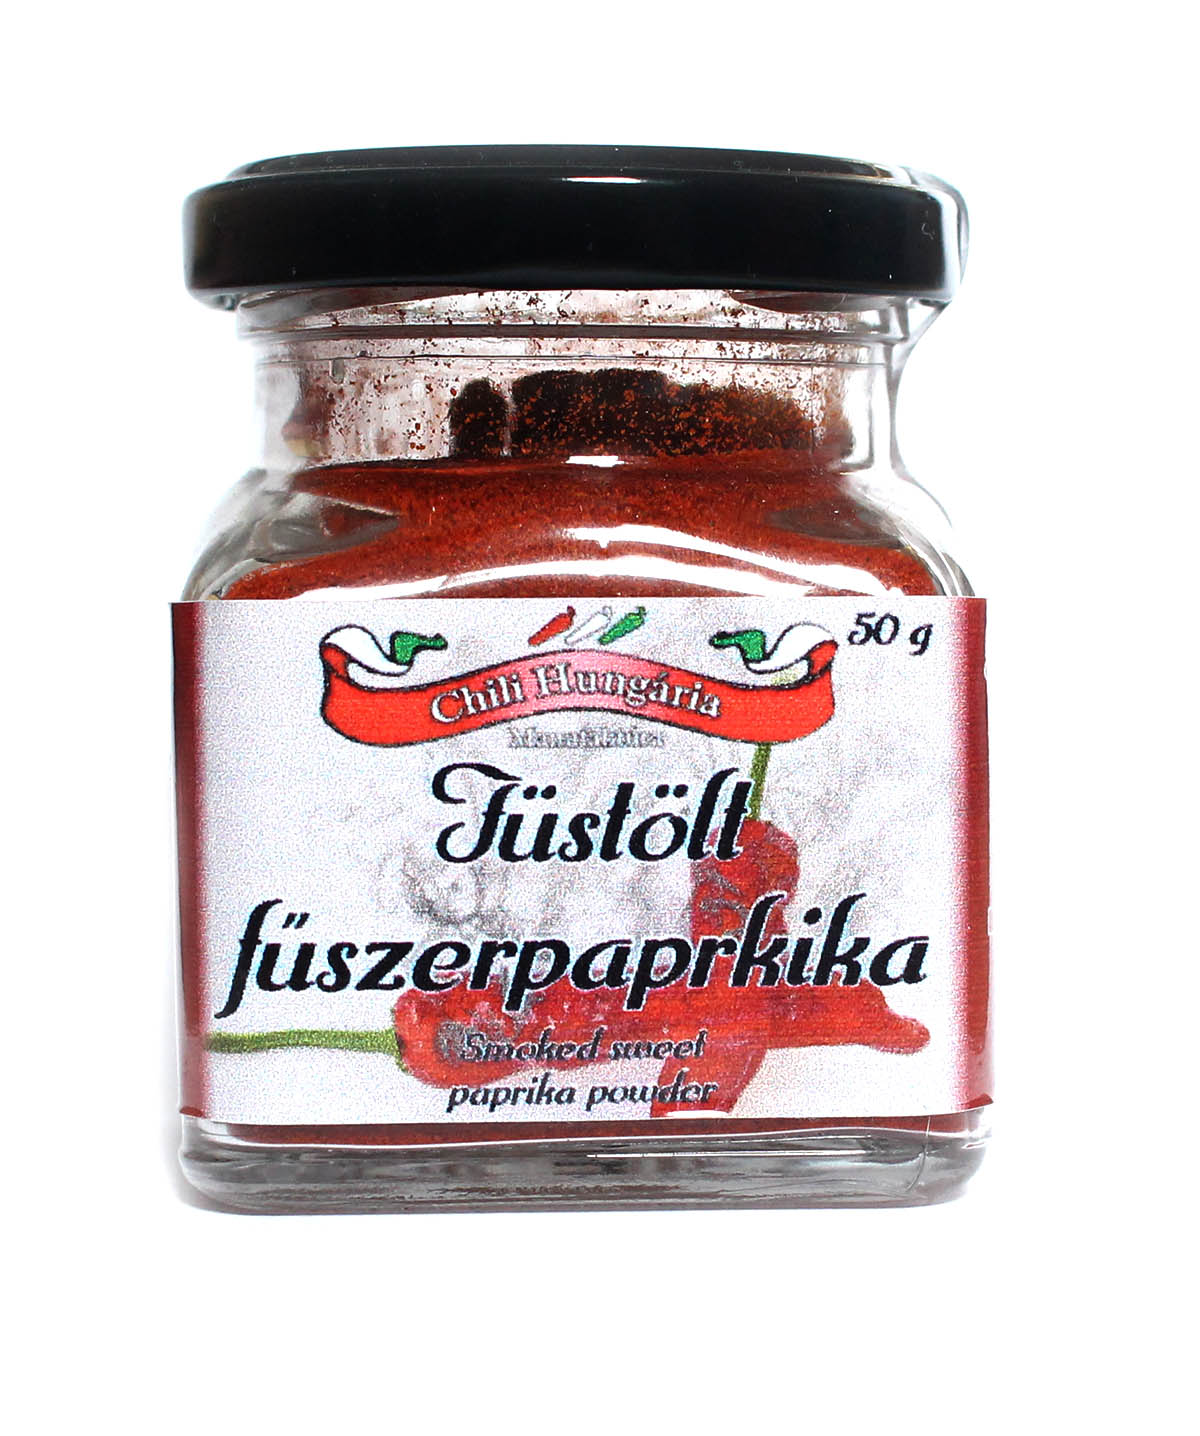 Uzená maďarská paprika sladká - 50g